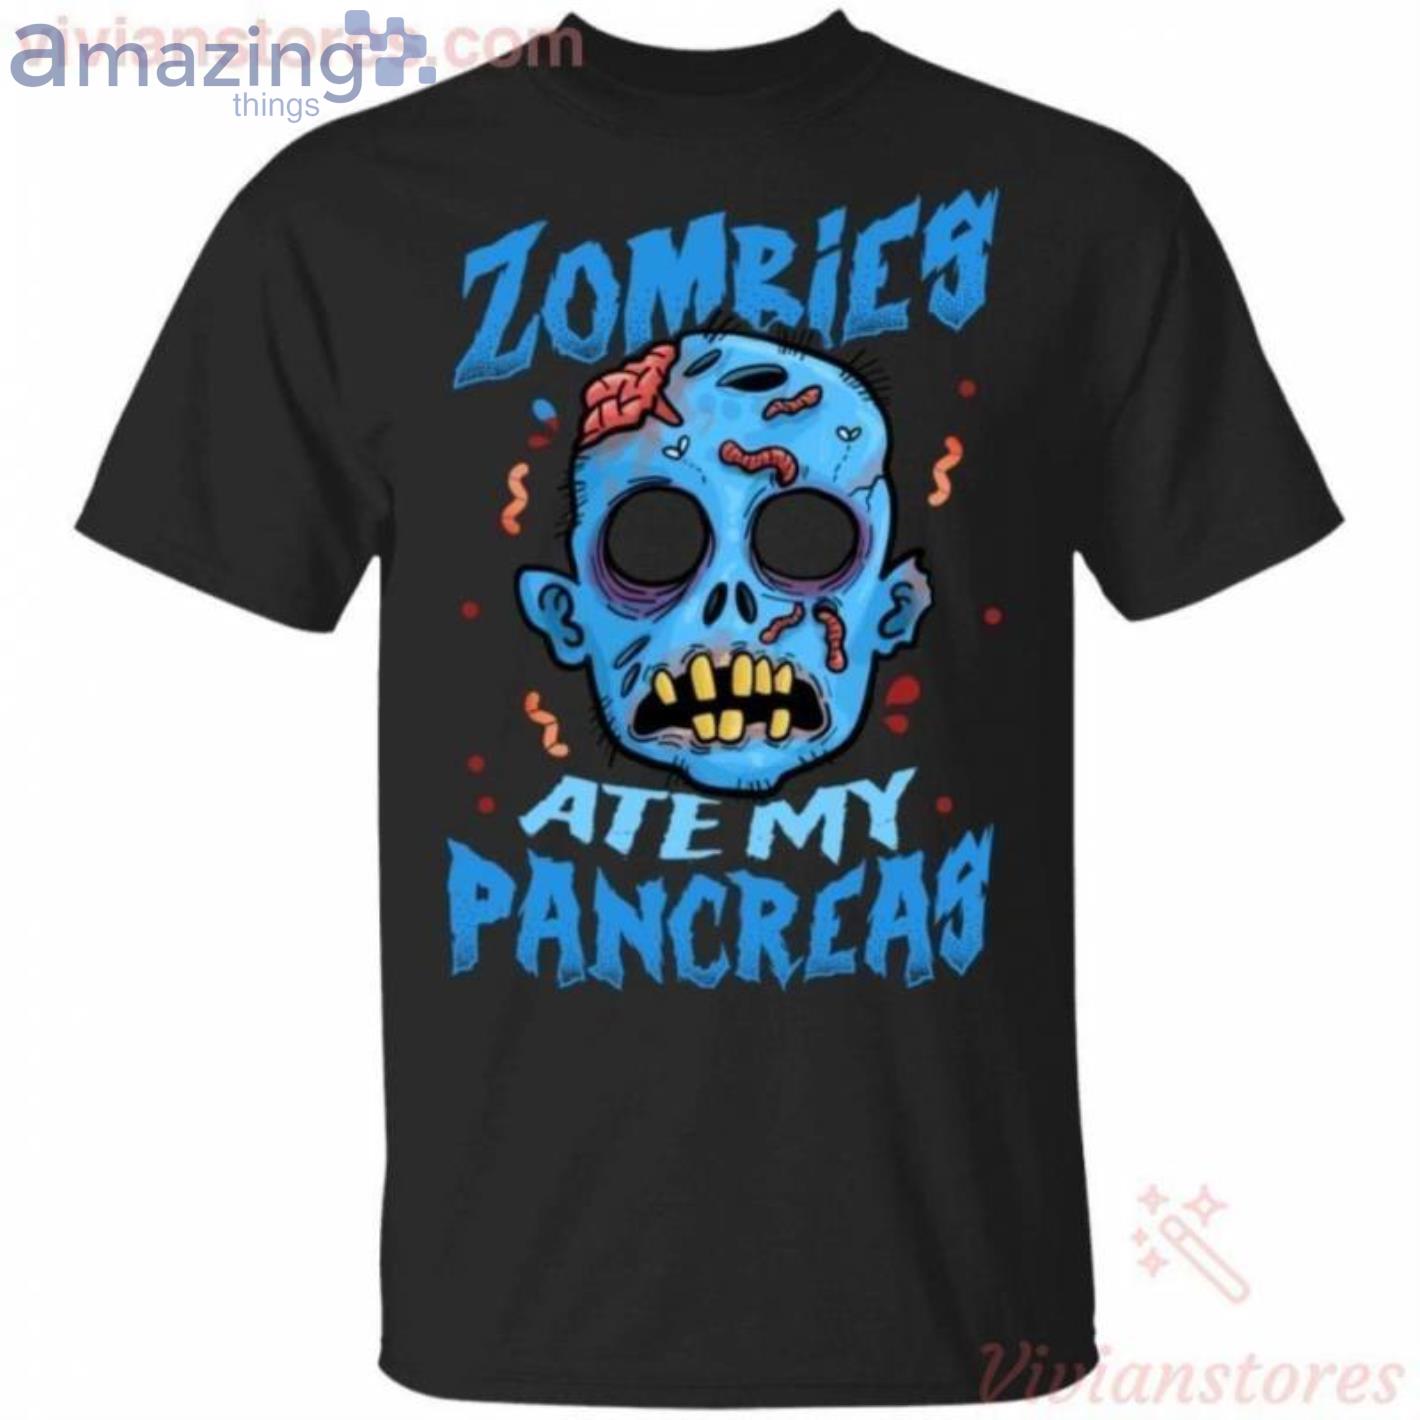 Zombies Ate My Pancreas Diabetes Awareness Halloween T-Shirt Product Photo 1